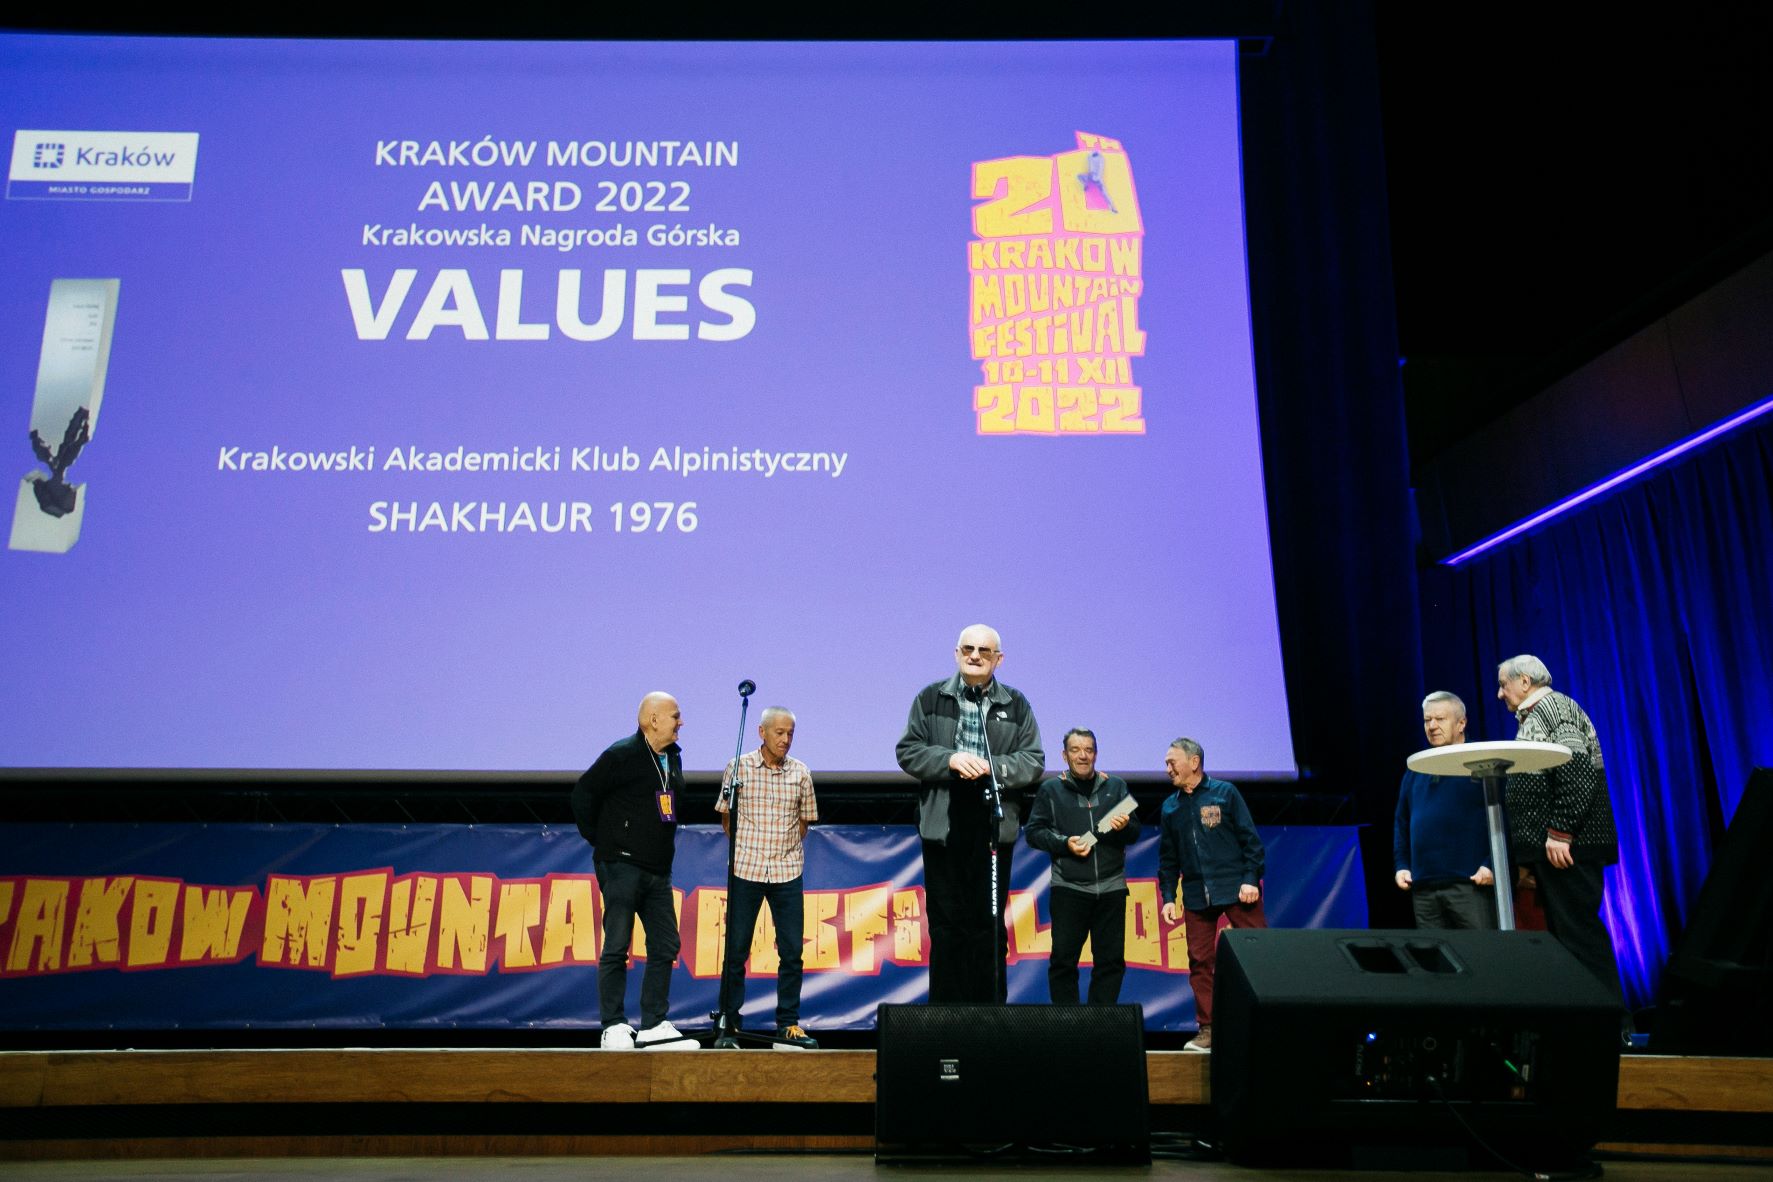 Tegoroczna Kraków Mountain Award Values powędrowała do uczestników wyprawy Krakowskiego Akademickiego Klubu Alpinistycznego fot. Adam Kokot KFG